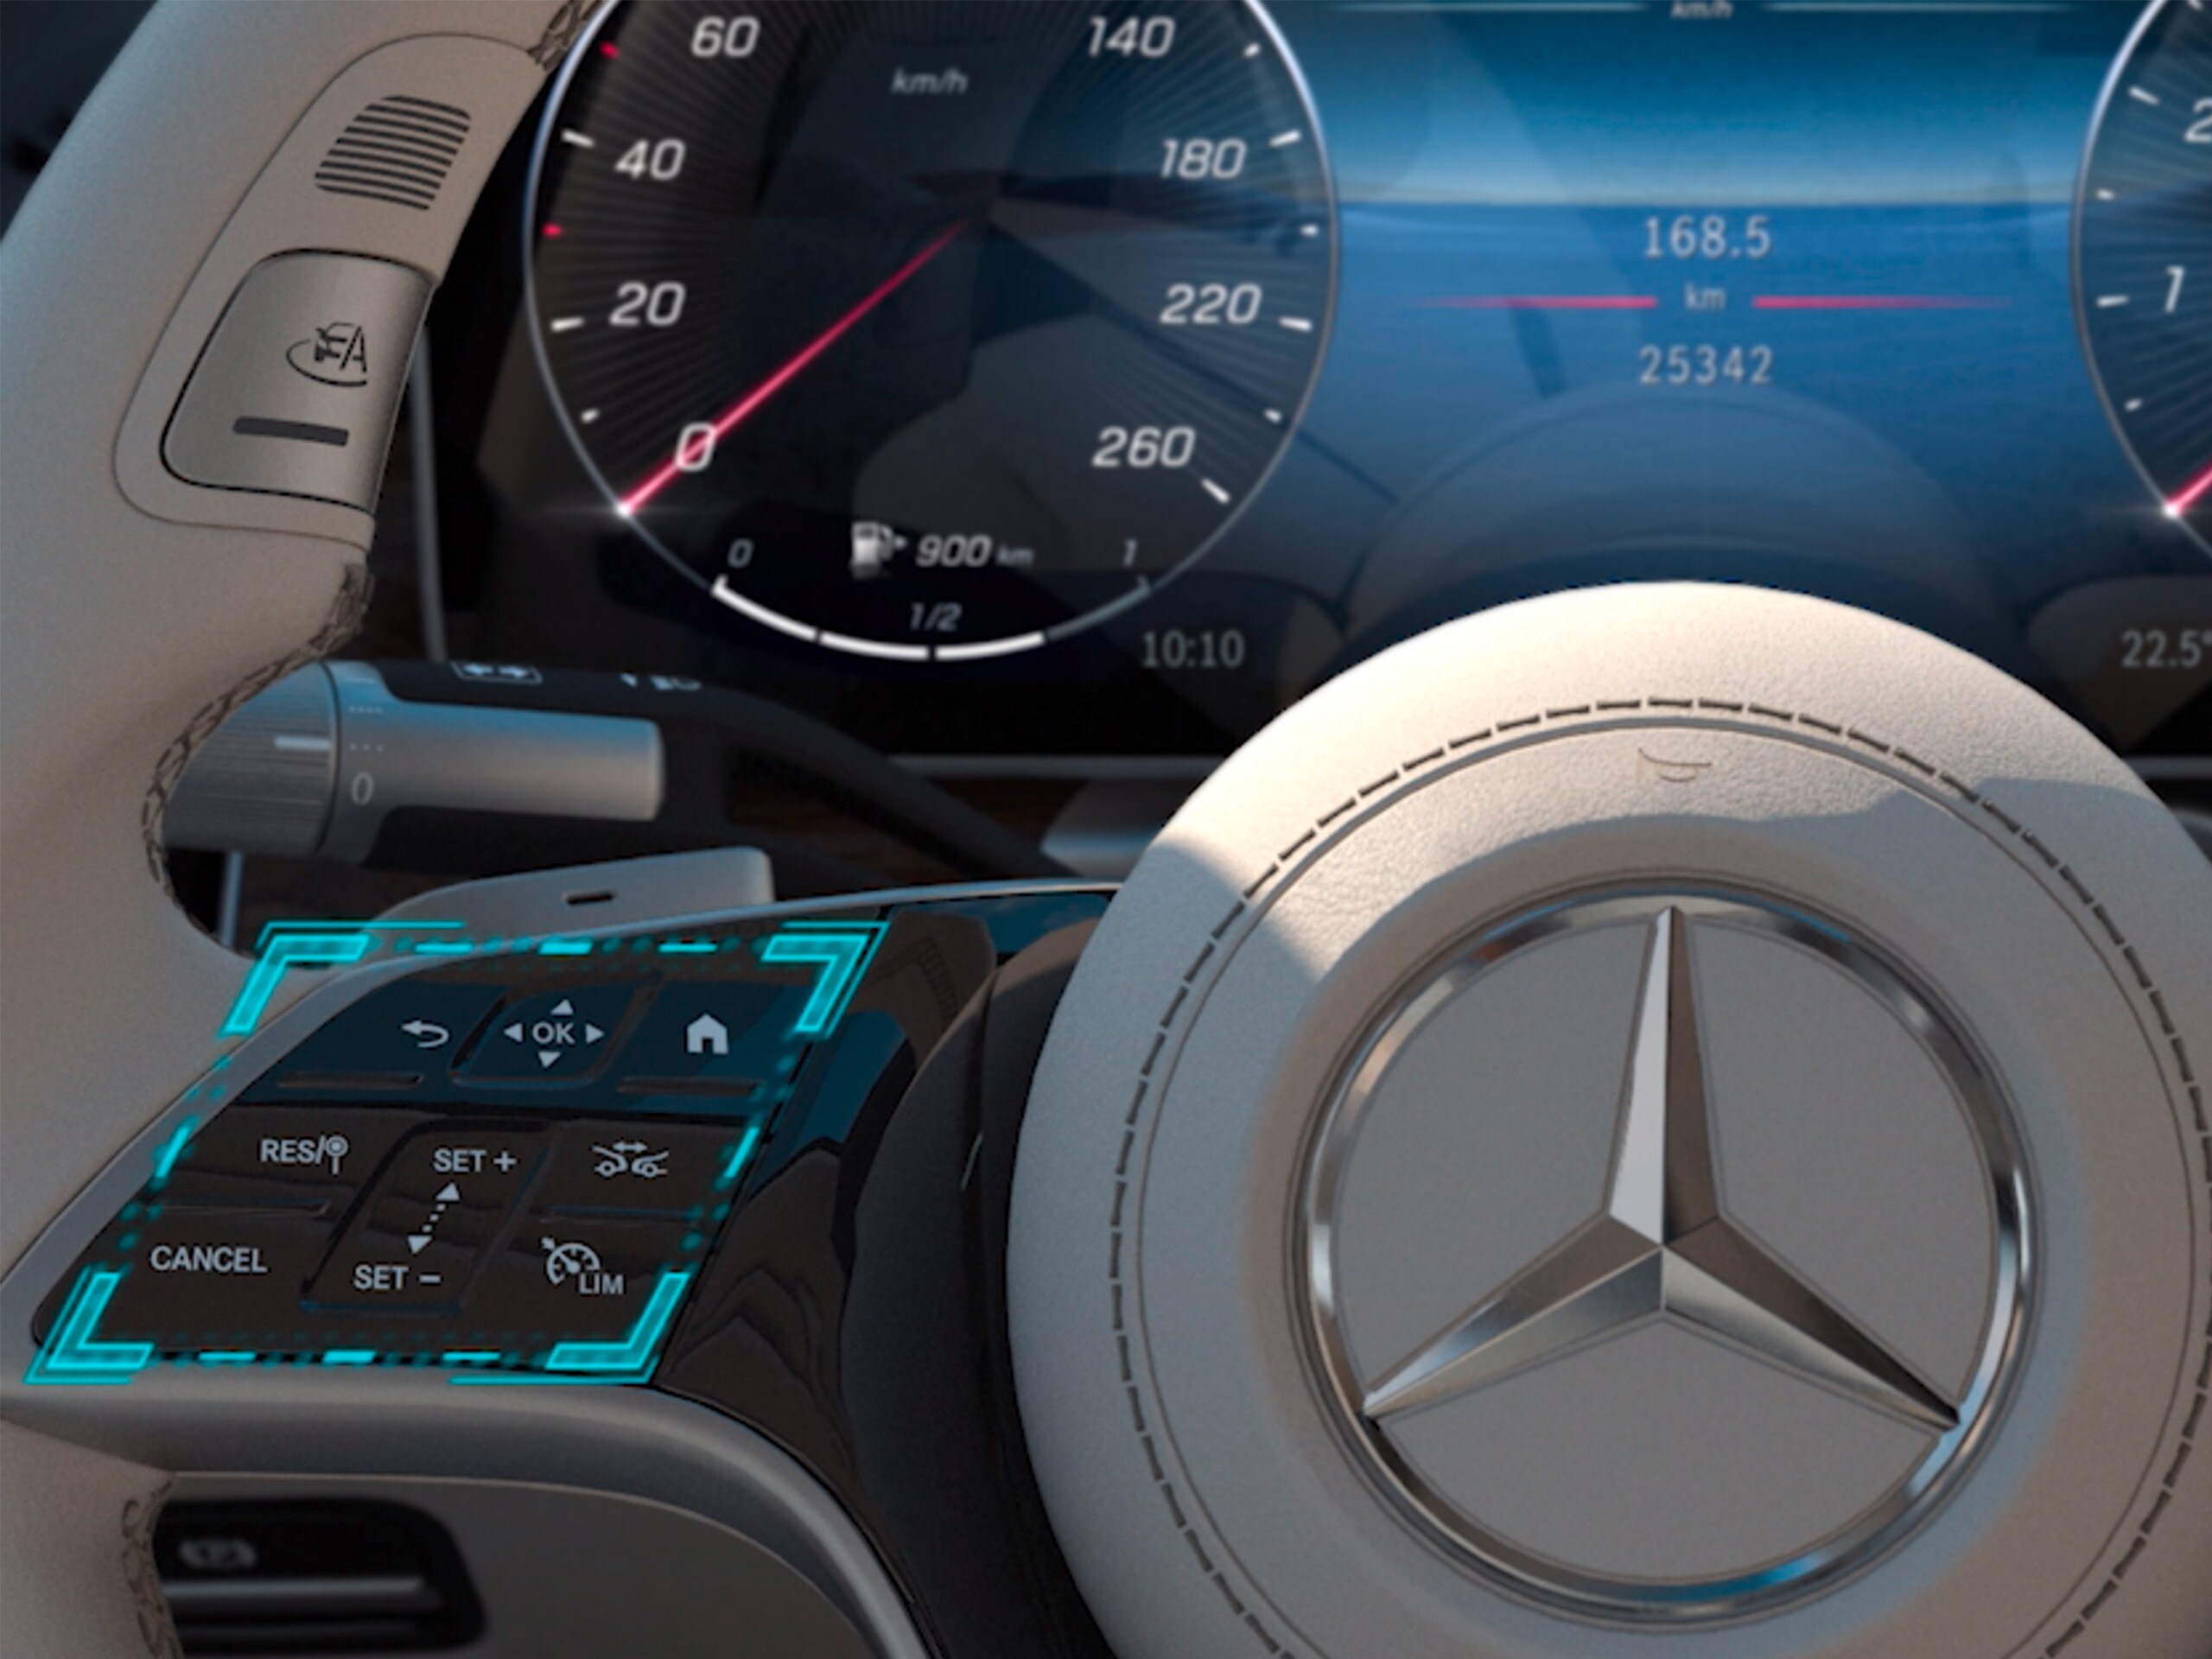 視頻中展示了Mercedes-Benz C系列房車的MBUX觸摸操作概念功能。